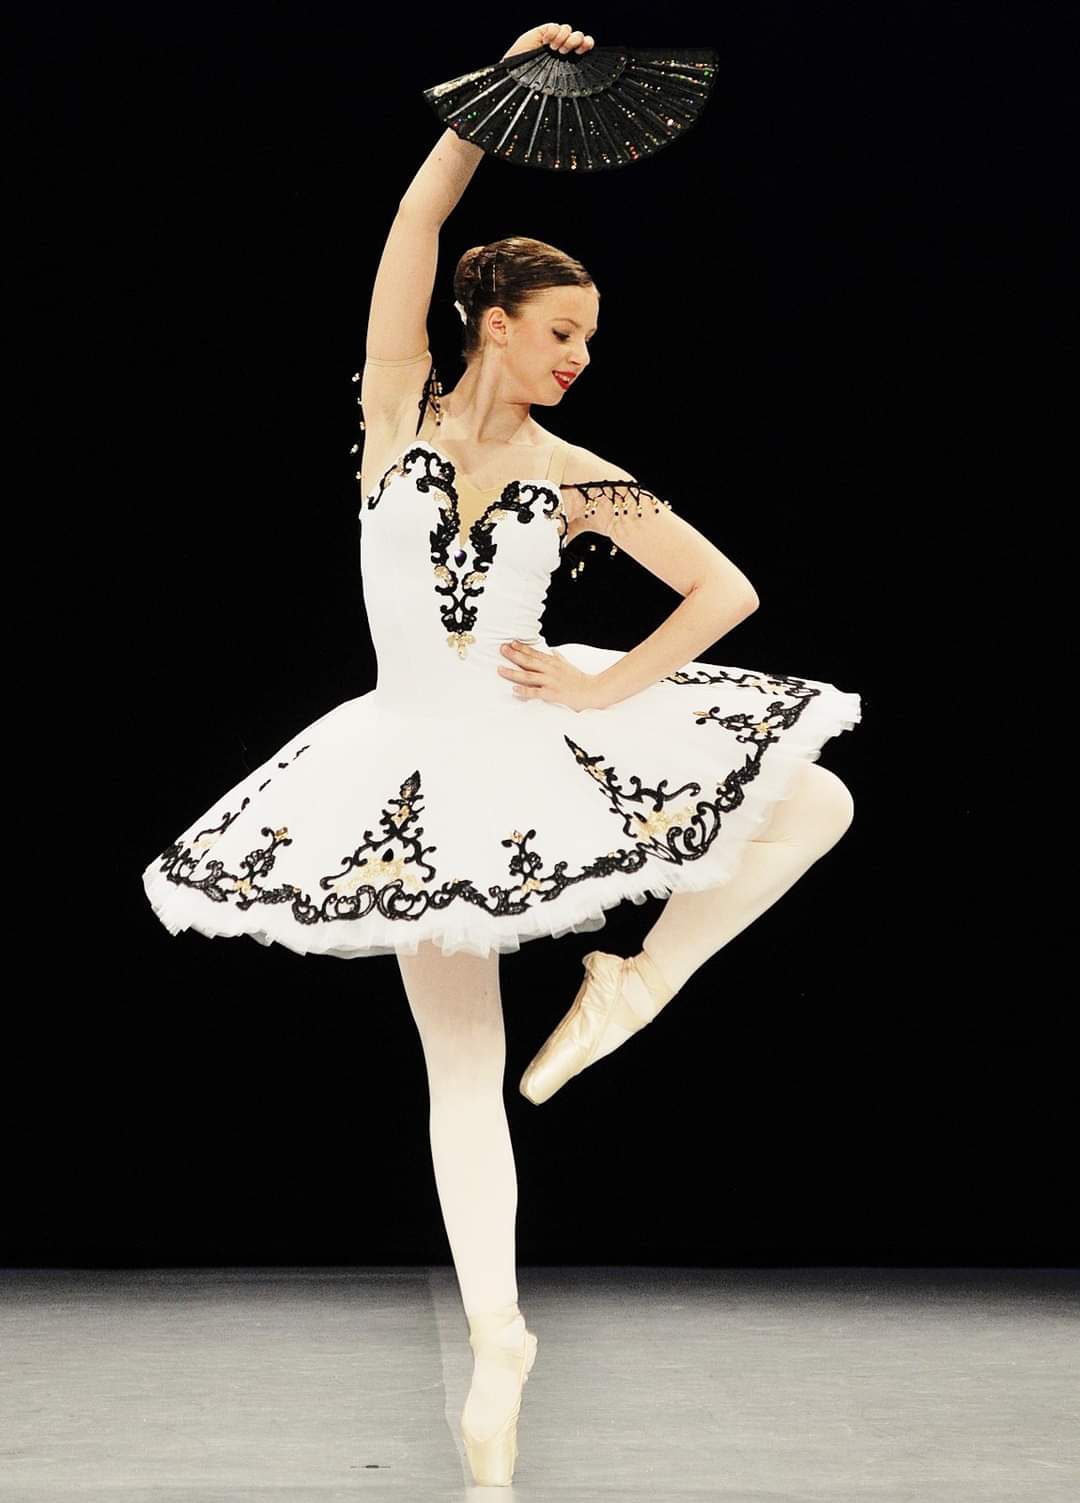 Paczka baletowa klasyczna szycie stroje baletowe tutu classical costumes ballet Kitri Esmeralda Paquita custom stage